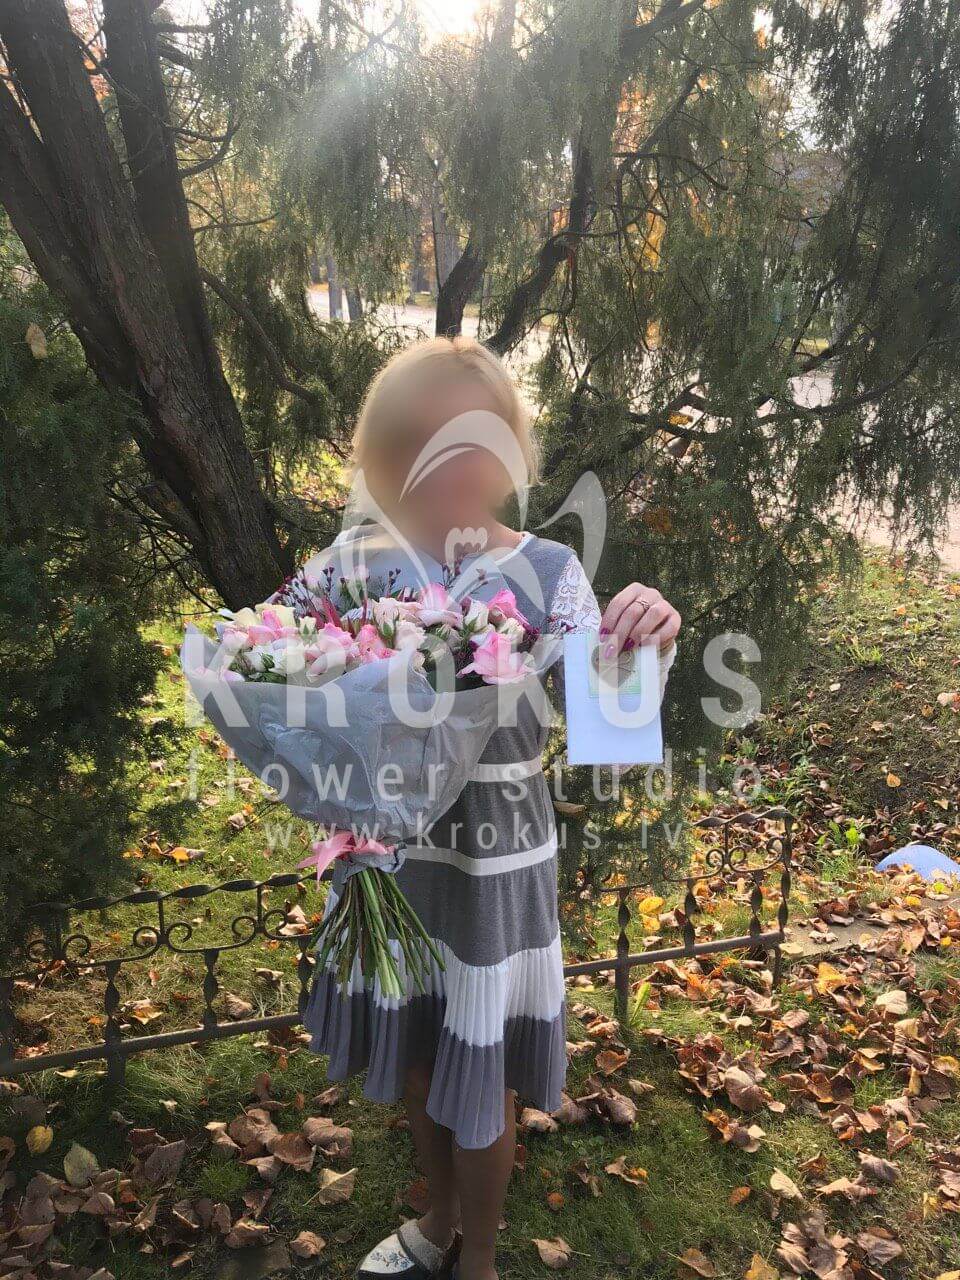 Доставка цветов в город Jelgava (кустовые розырозовые розыпротеяваксфлауэр)